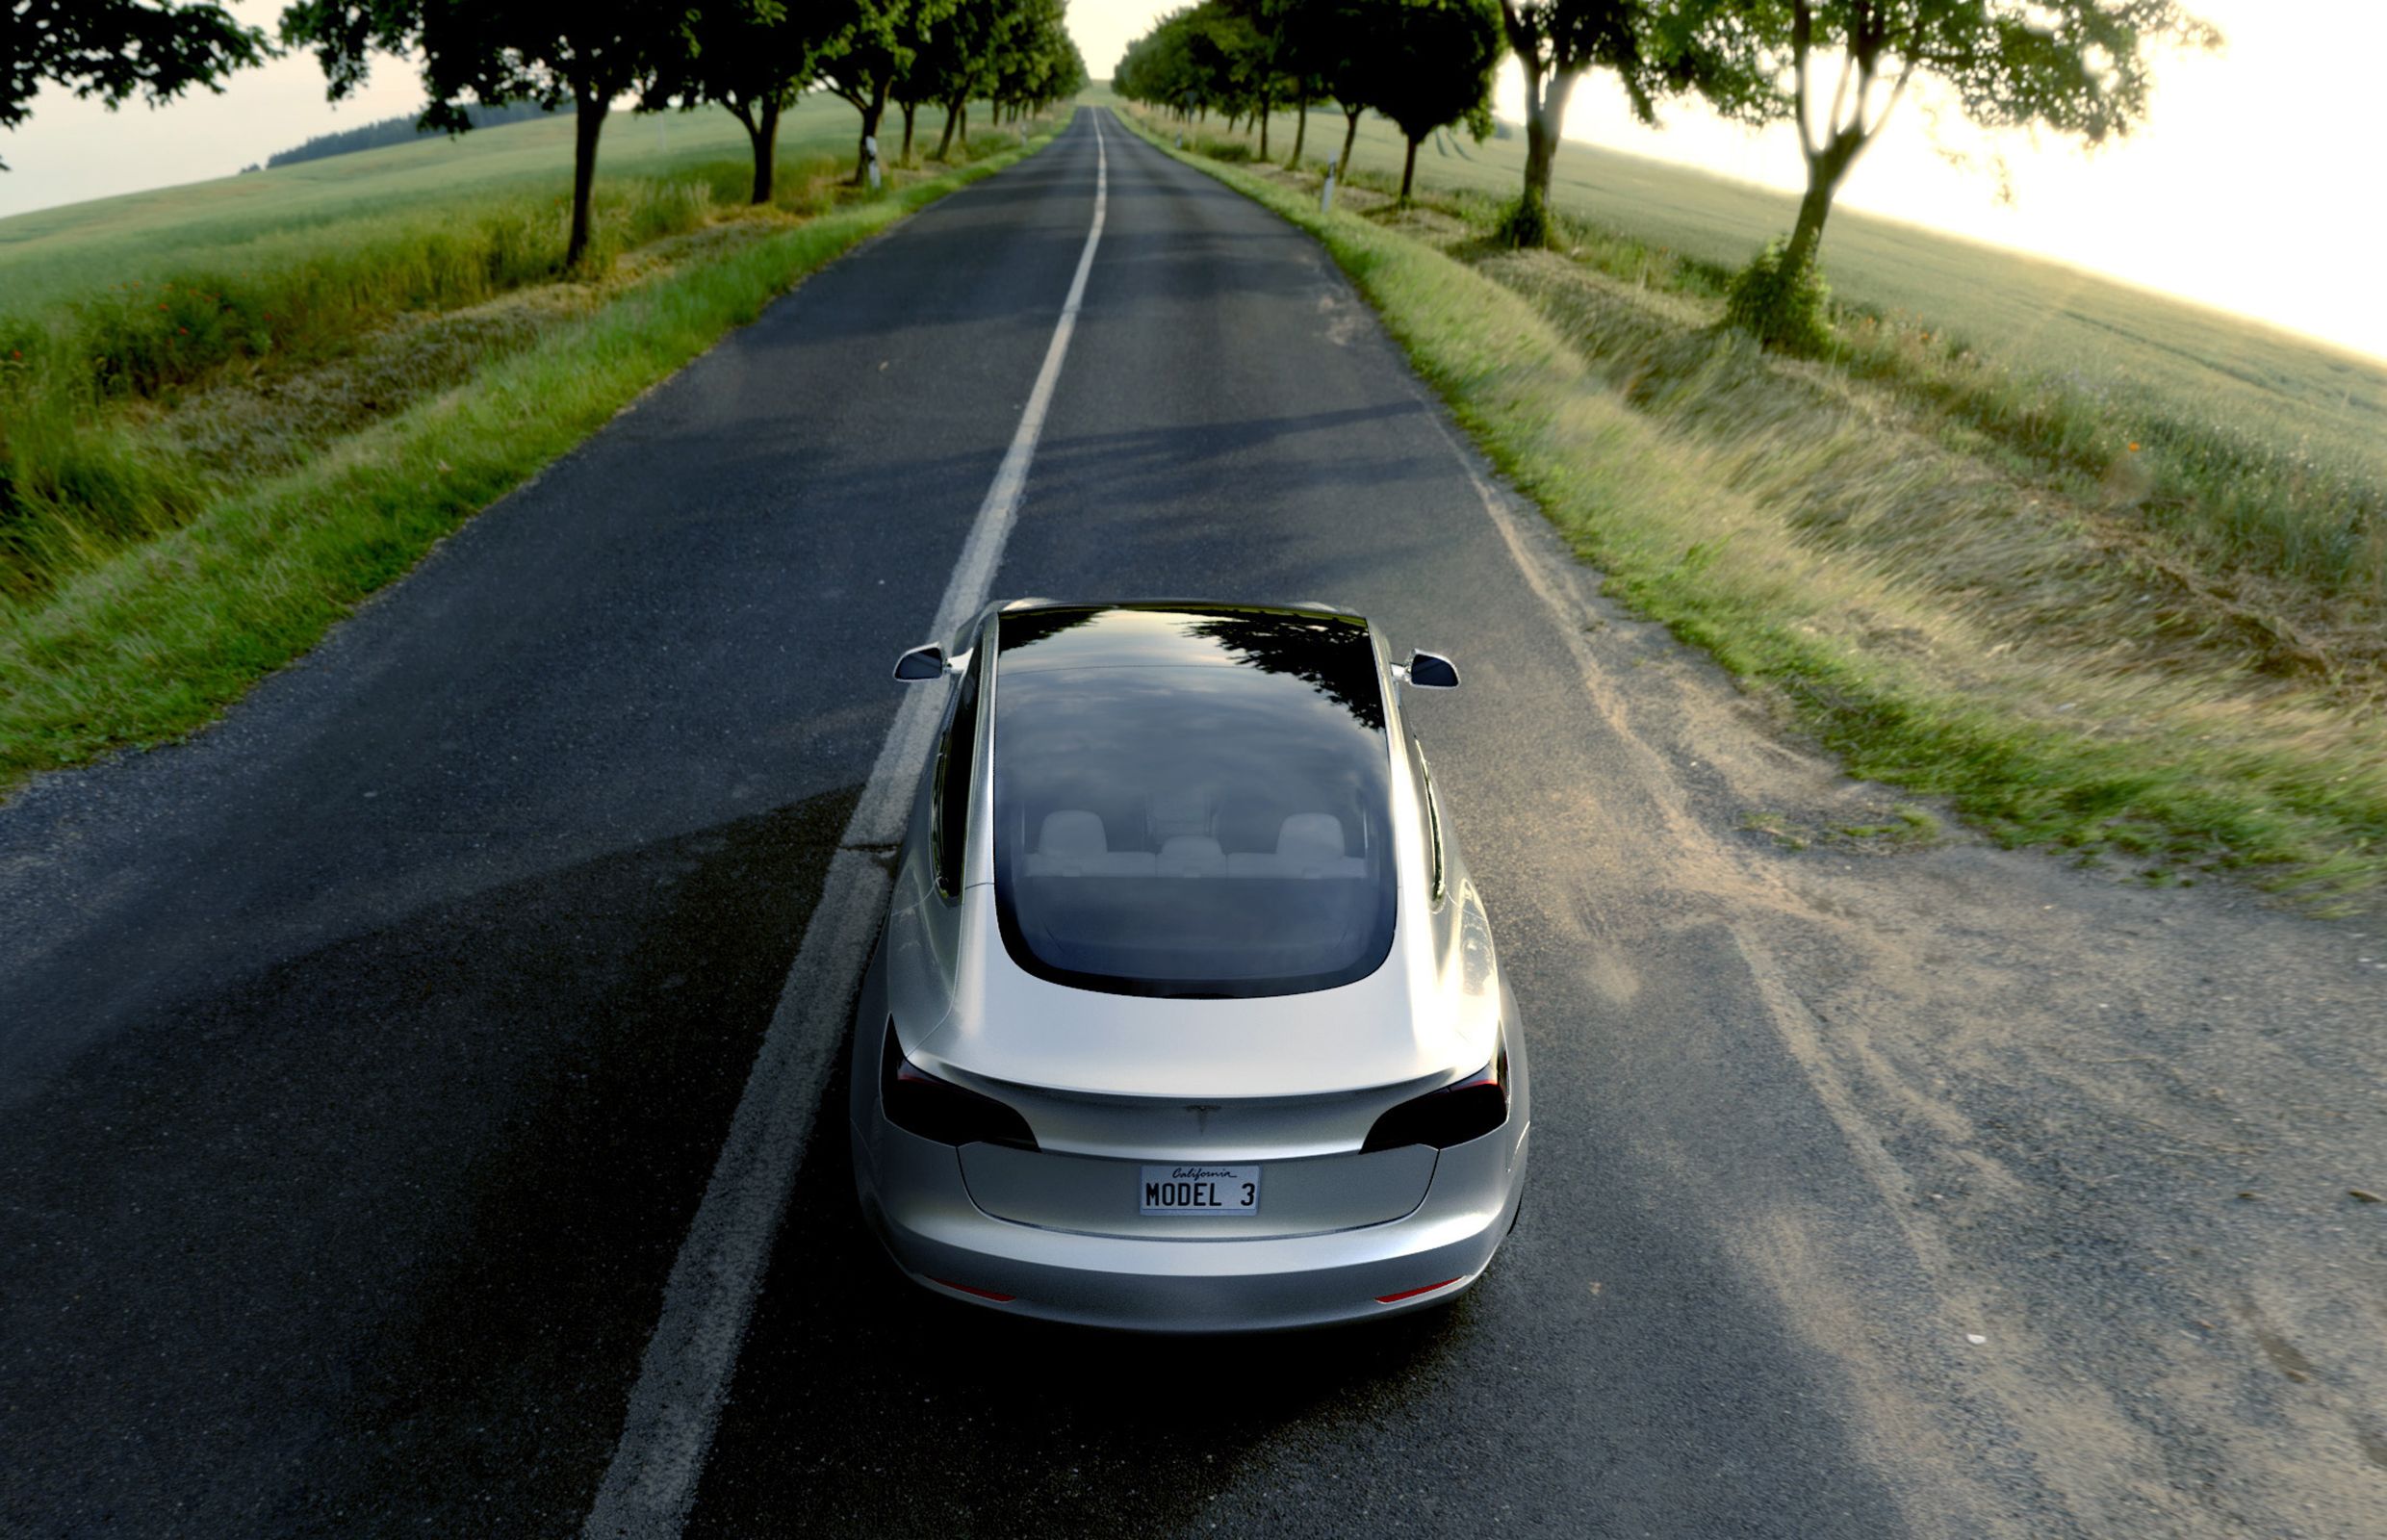 Les incroyables secrets de la toute dernière Tesla Model 3 - Challenges